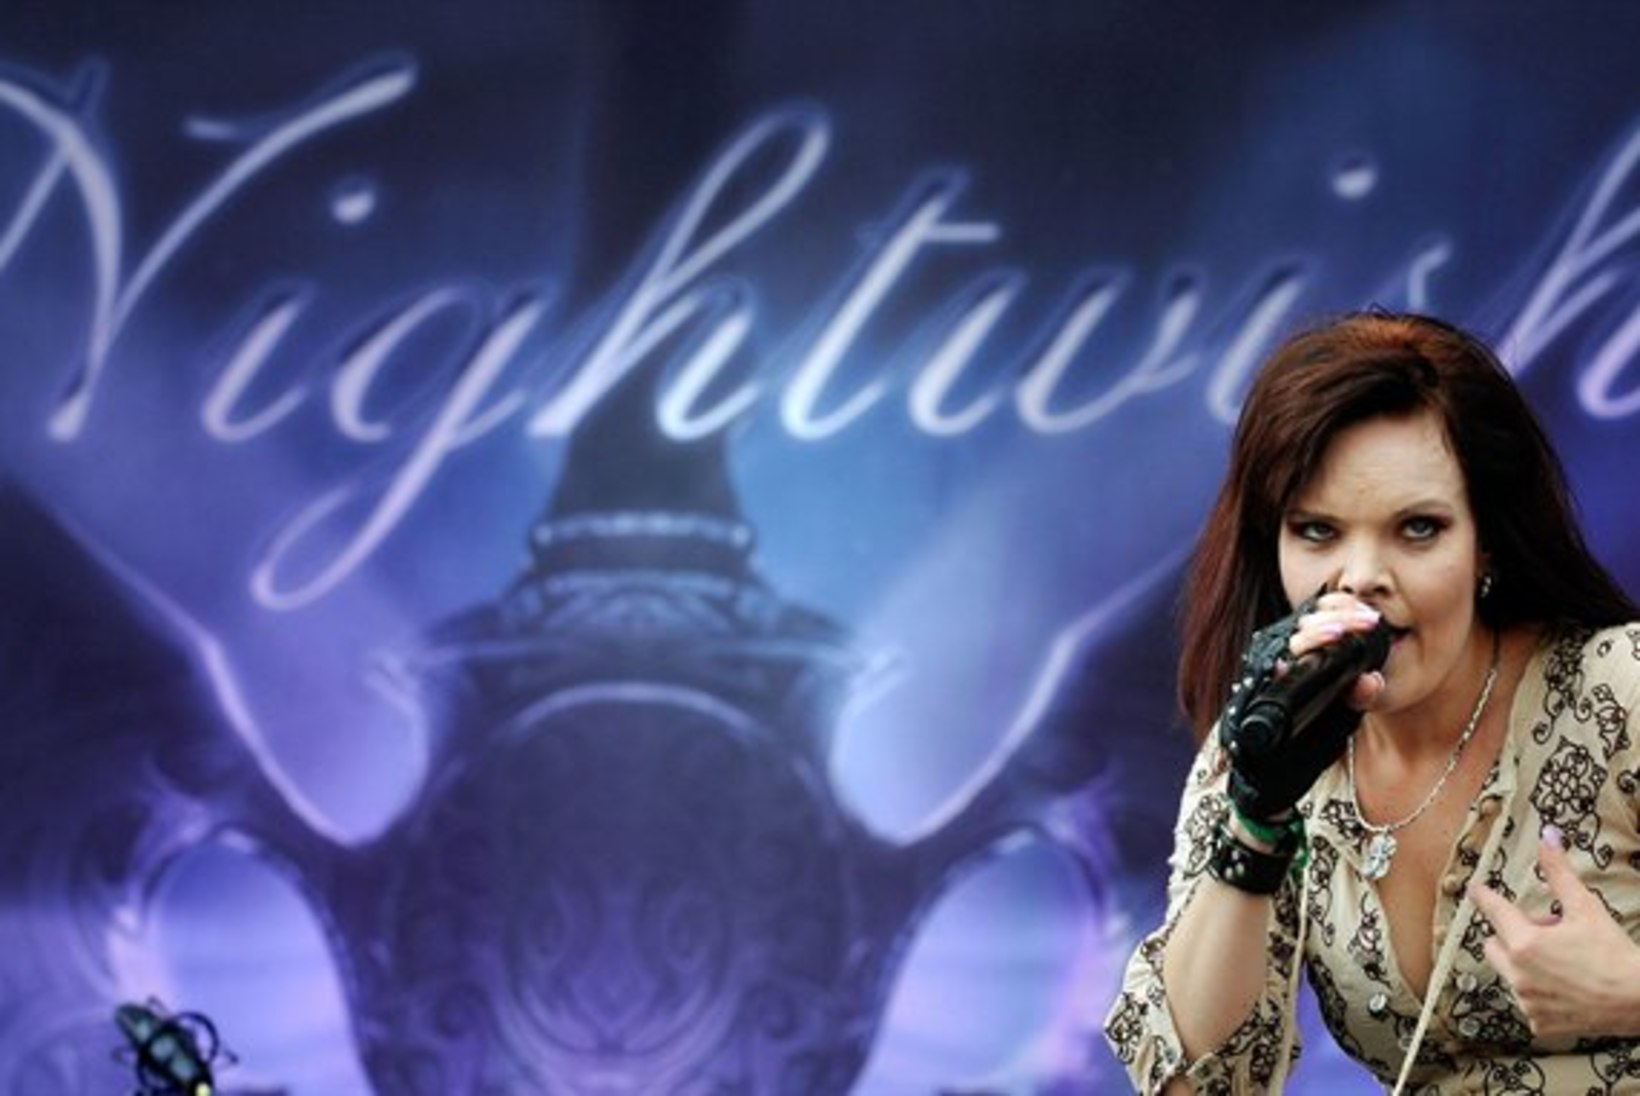 Nightwish vahetas taas lauljat